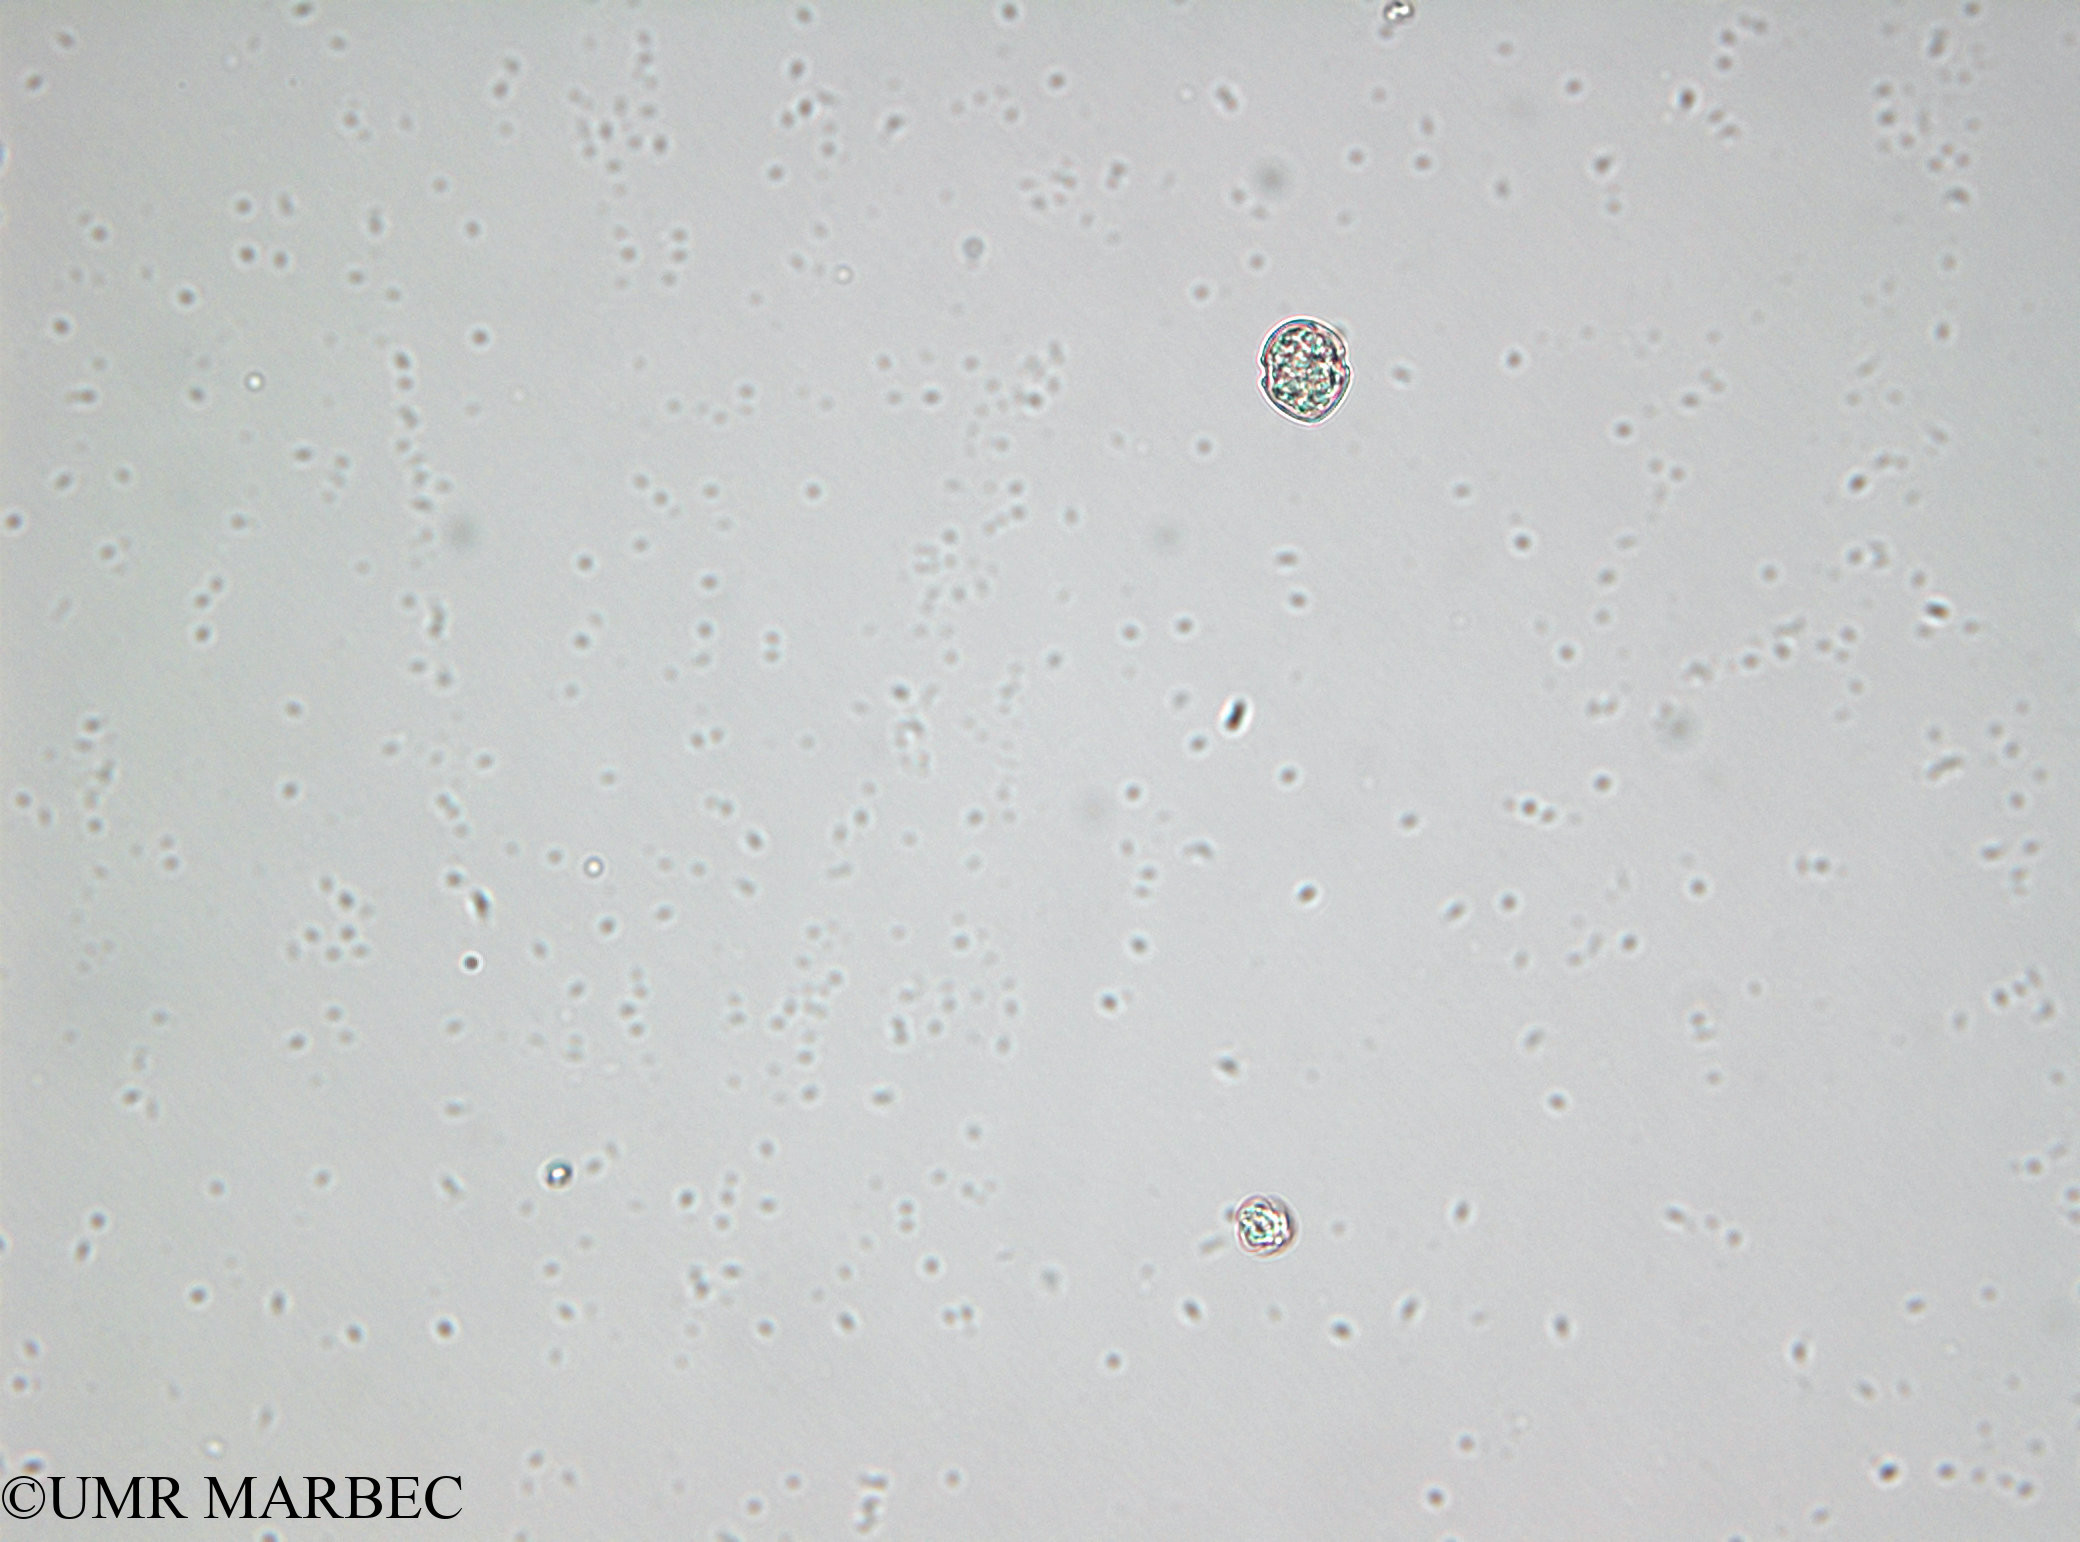 phyto/Bizerte/bizerte_lagoon/RISCO April 2014/Scrippsiella trochoidea (old Scrippsiella spp -sp2 cf trochoidea- 140730_003)(copy).jpg